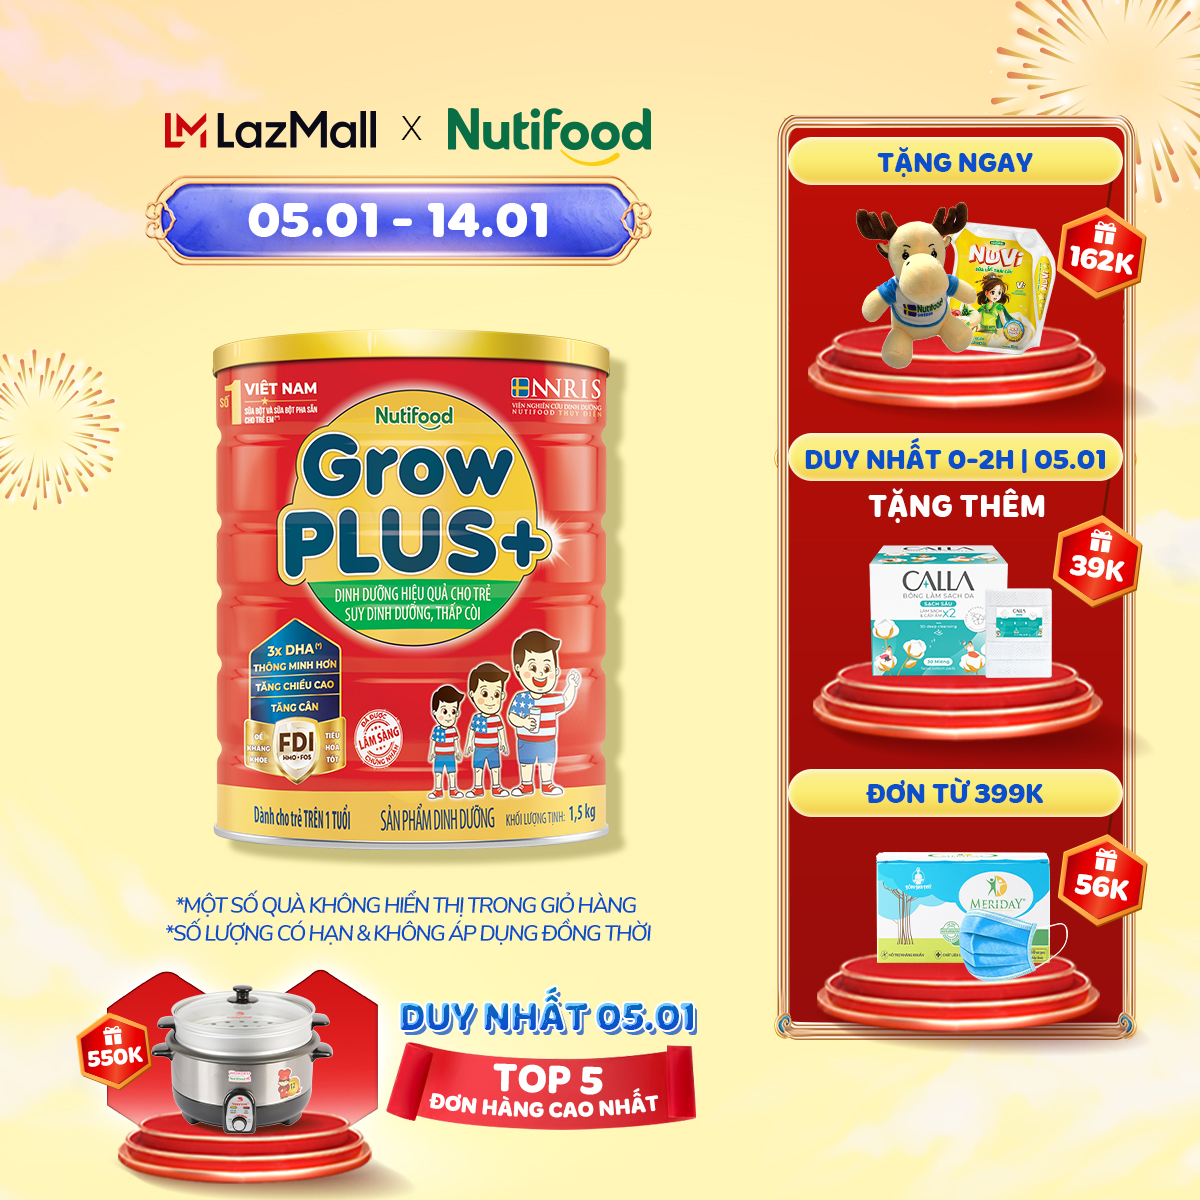 Sữa bột GrowPLUS+ suy dinh dưỡng trên 1 tuổi - Đạt danh hiệu sữa trẻ em số 1 Việt Nam (Lon 1.5kg)